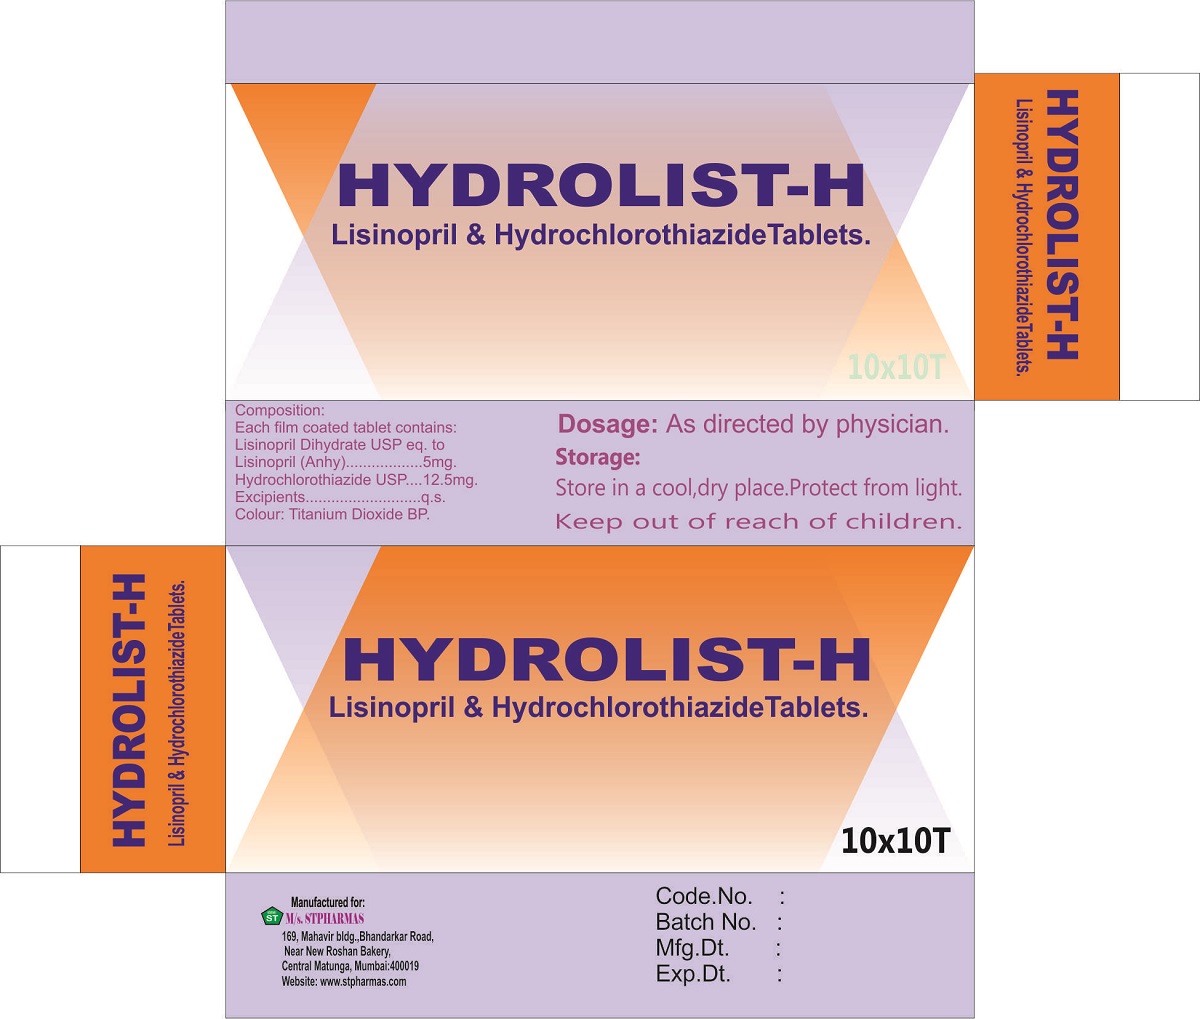 HYDROLIST-H